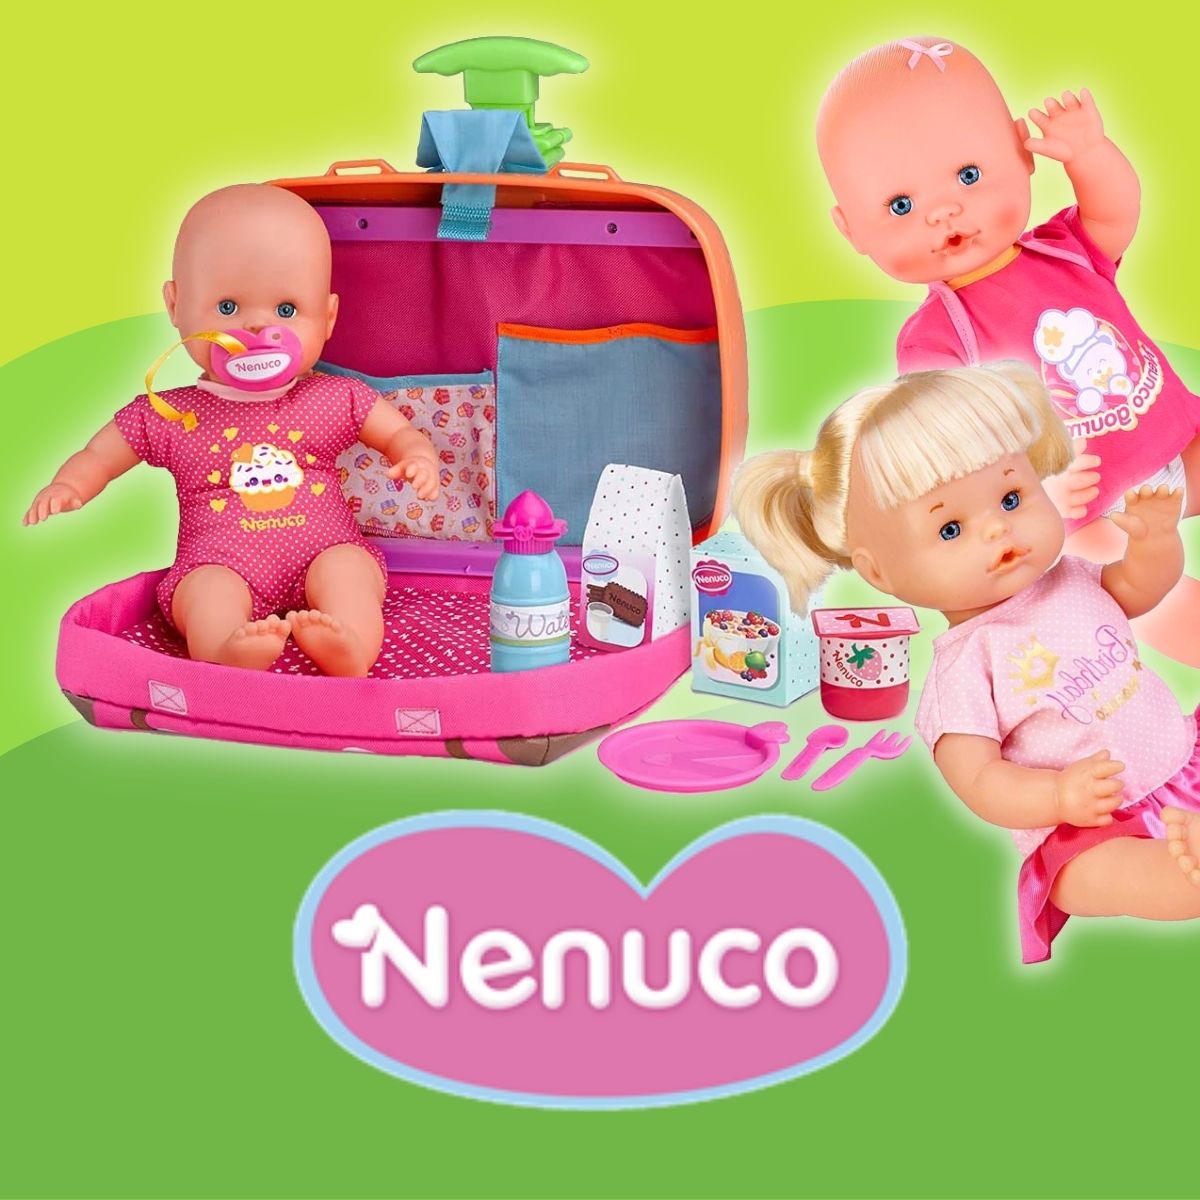 Nines Nenuco